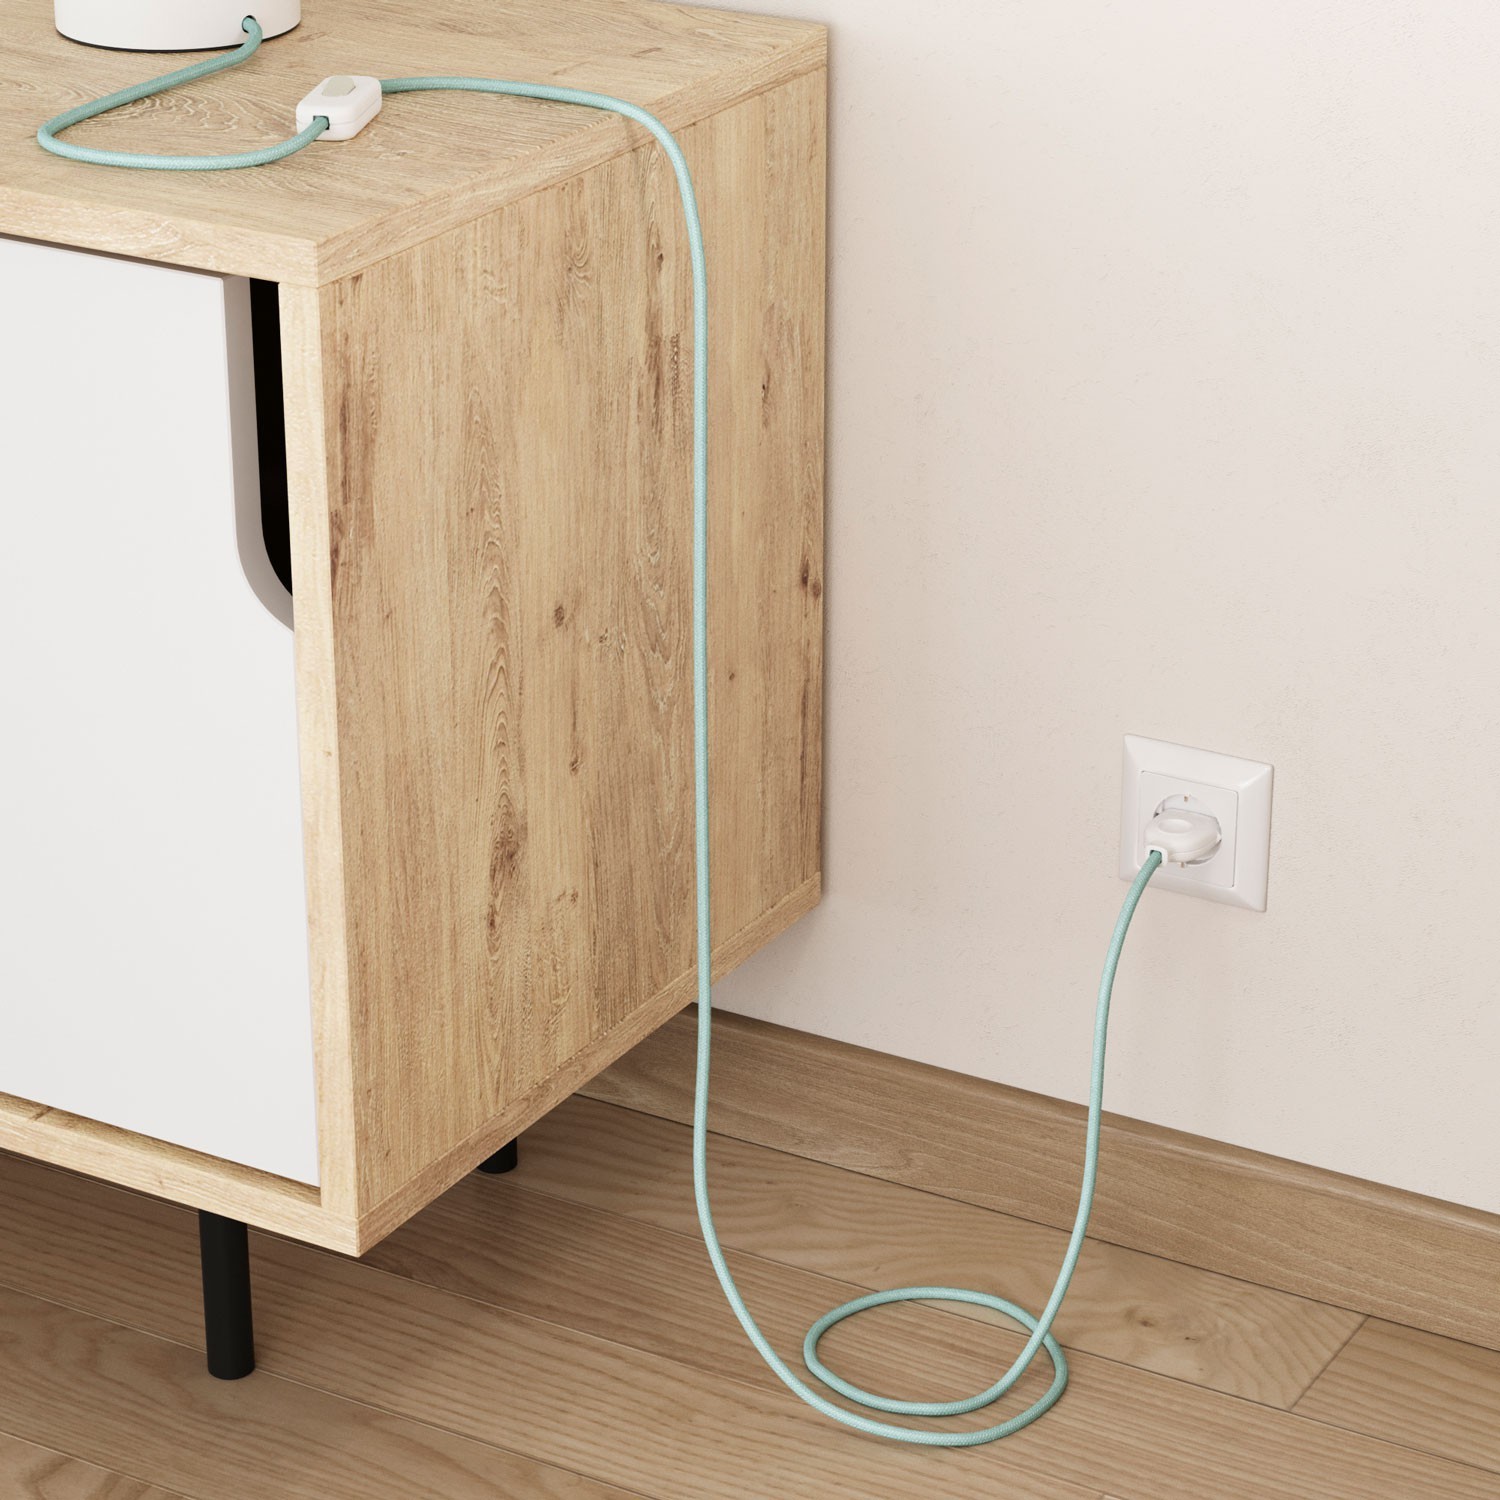 Okrugli električni pamučni tekstilni kabel u boji RC18 sivo zeleni